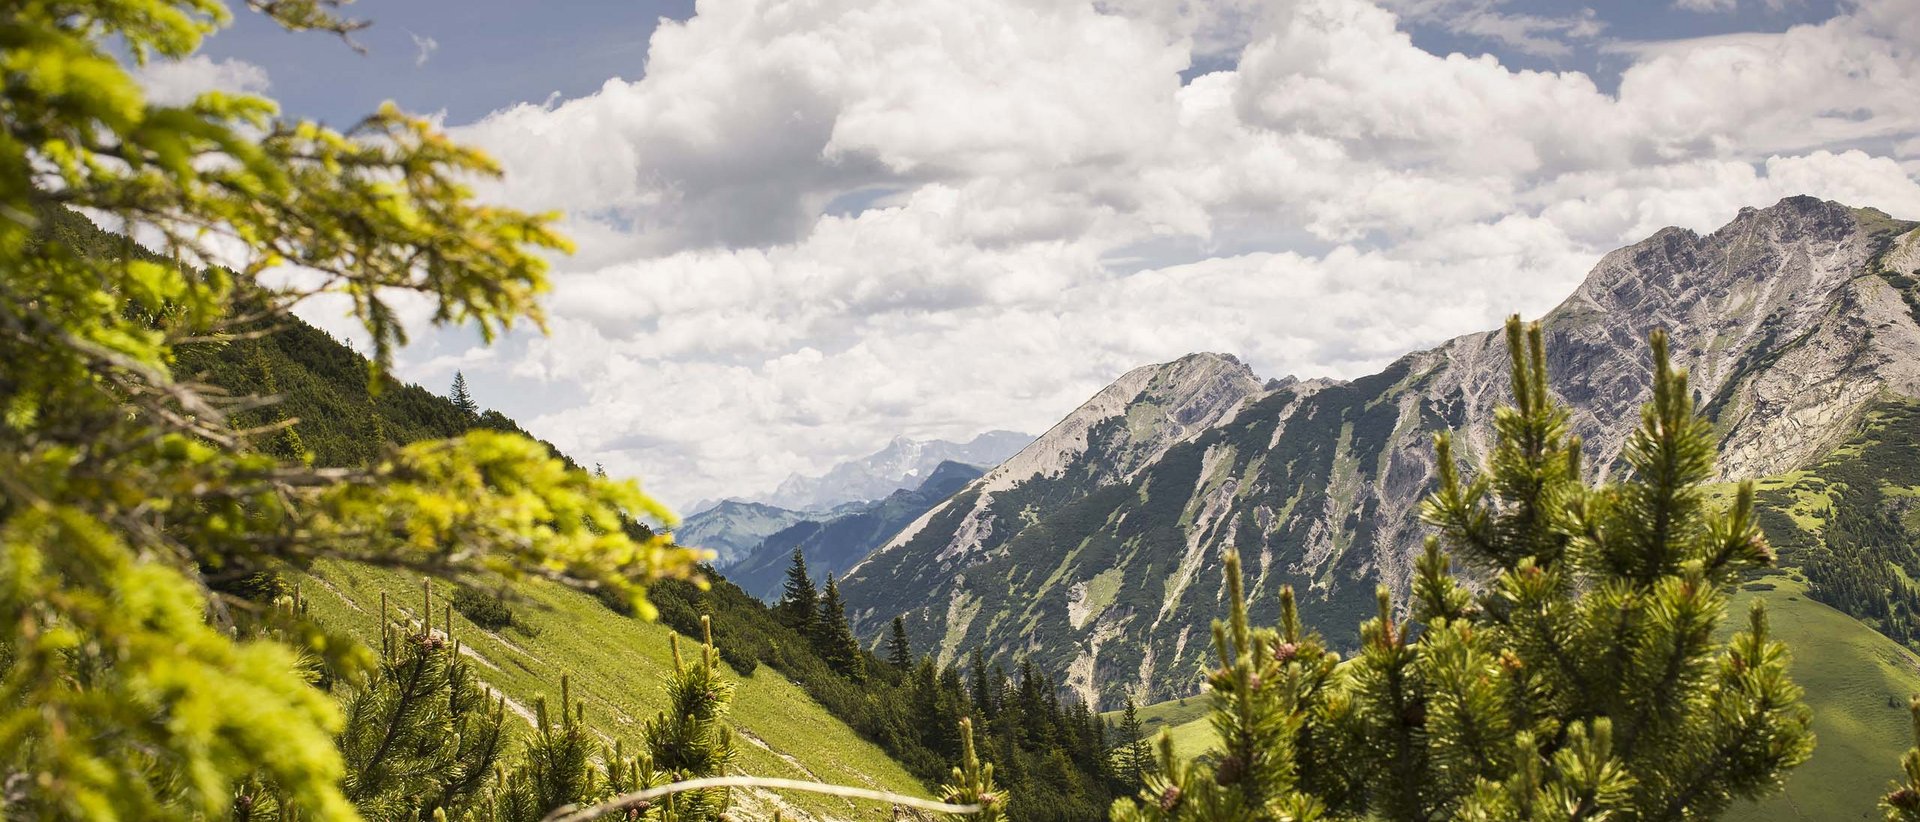 Alpin Chalets Oberjoch | Bergbahnen Oberjoch